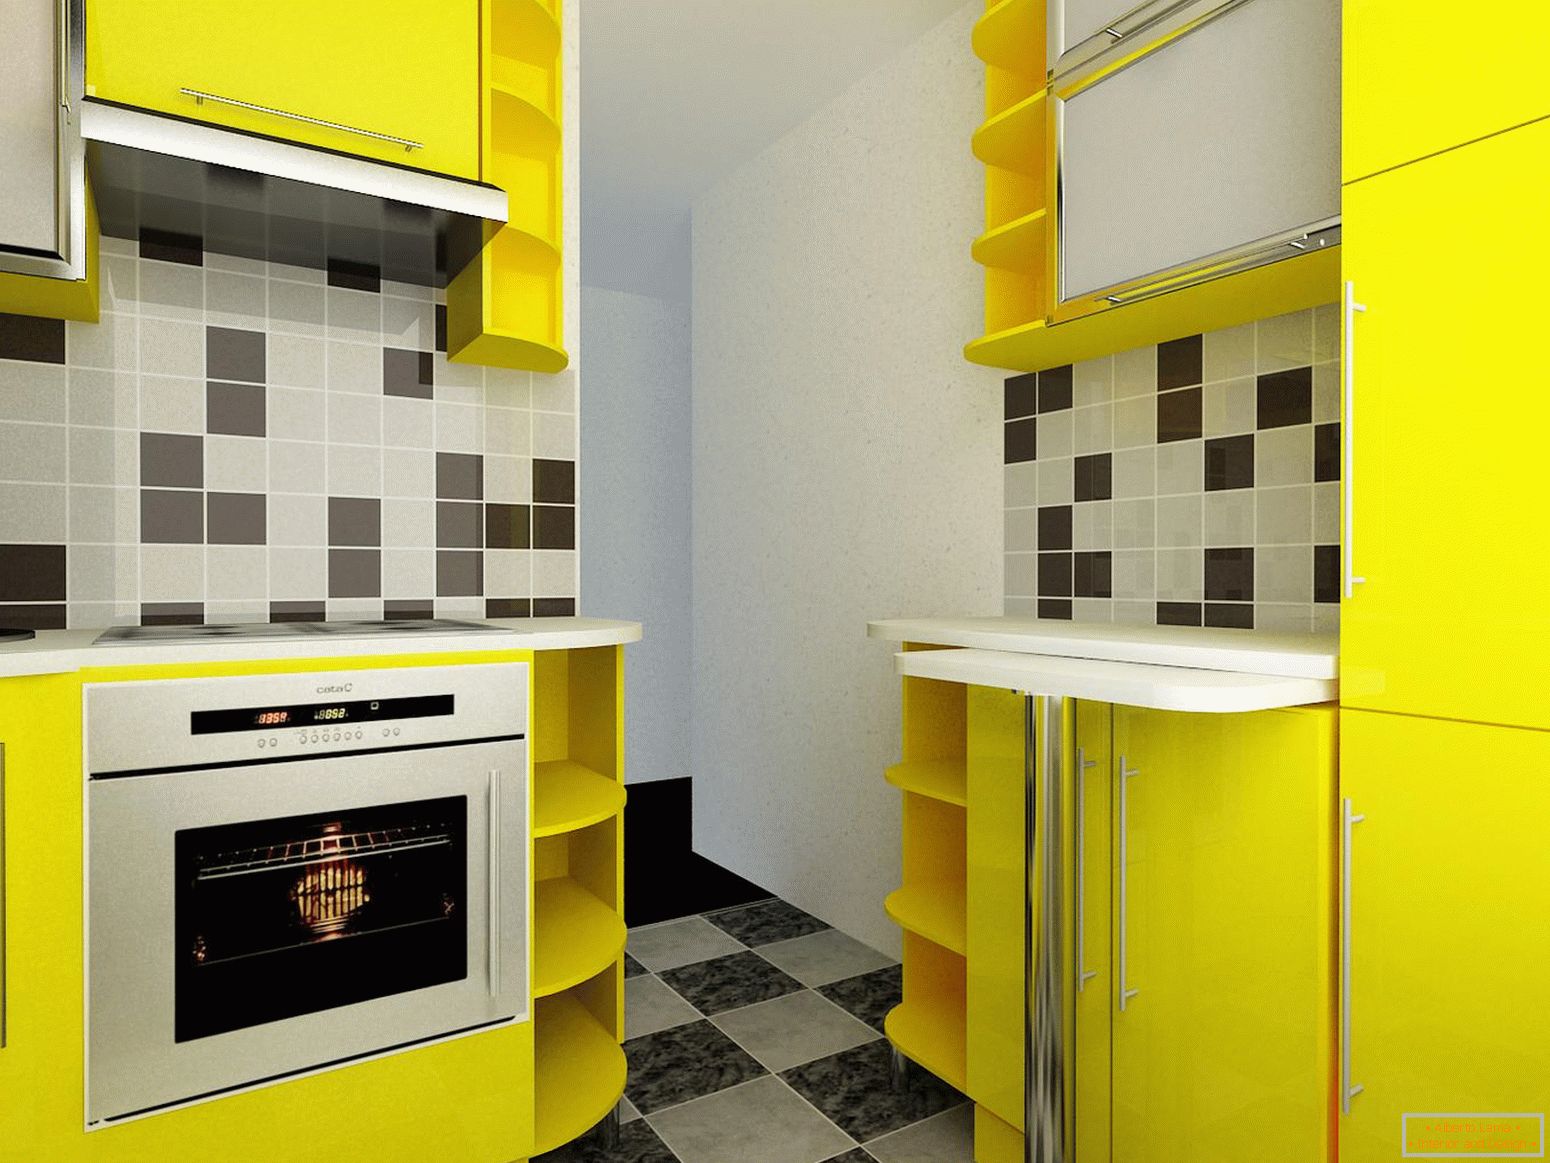 Pequena cozinha na cor amarela